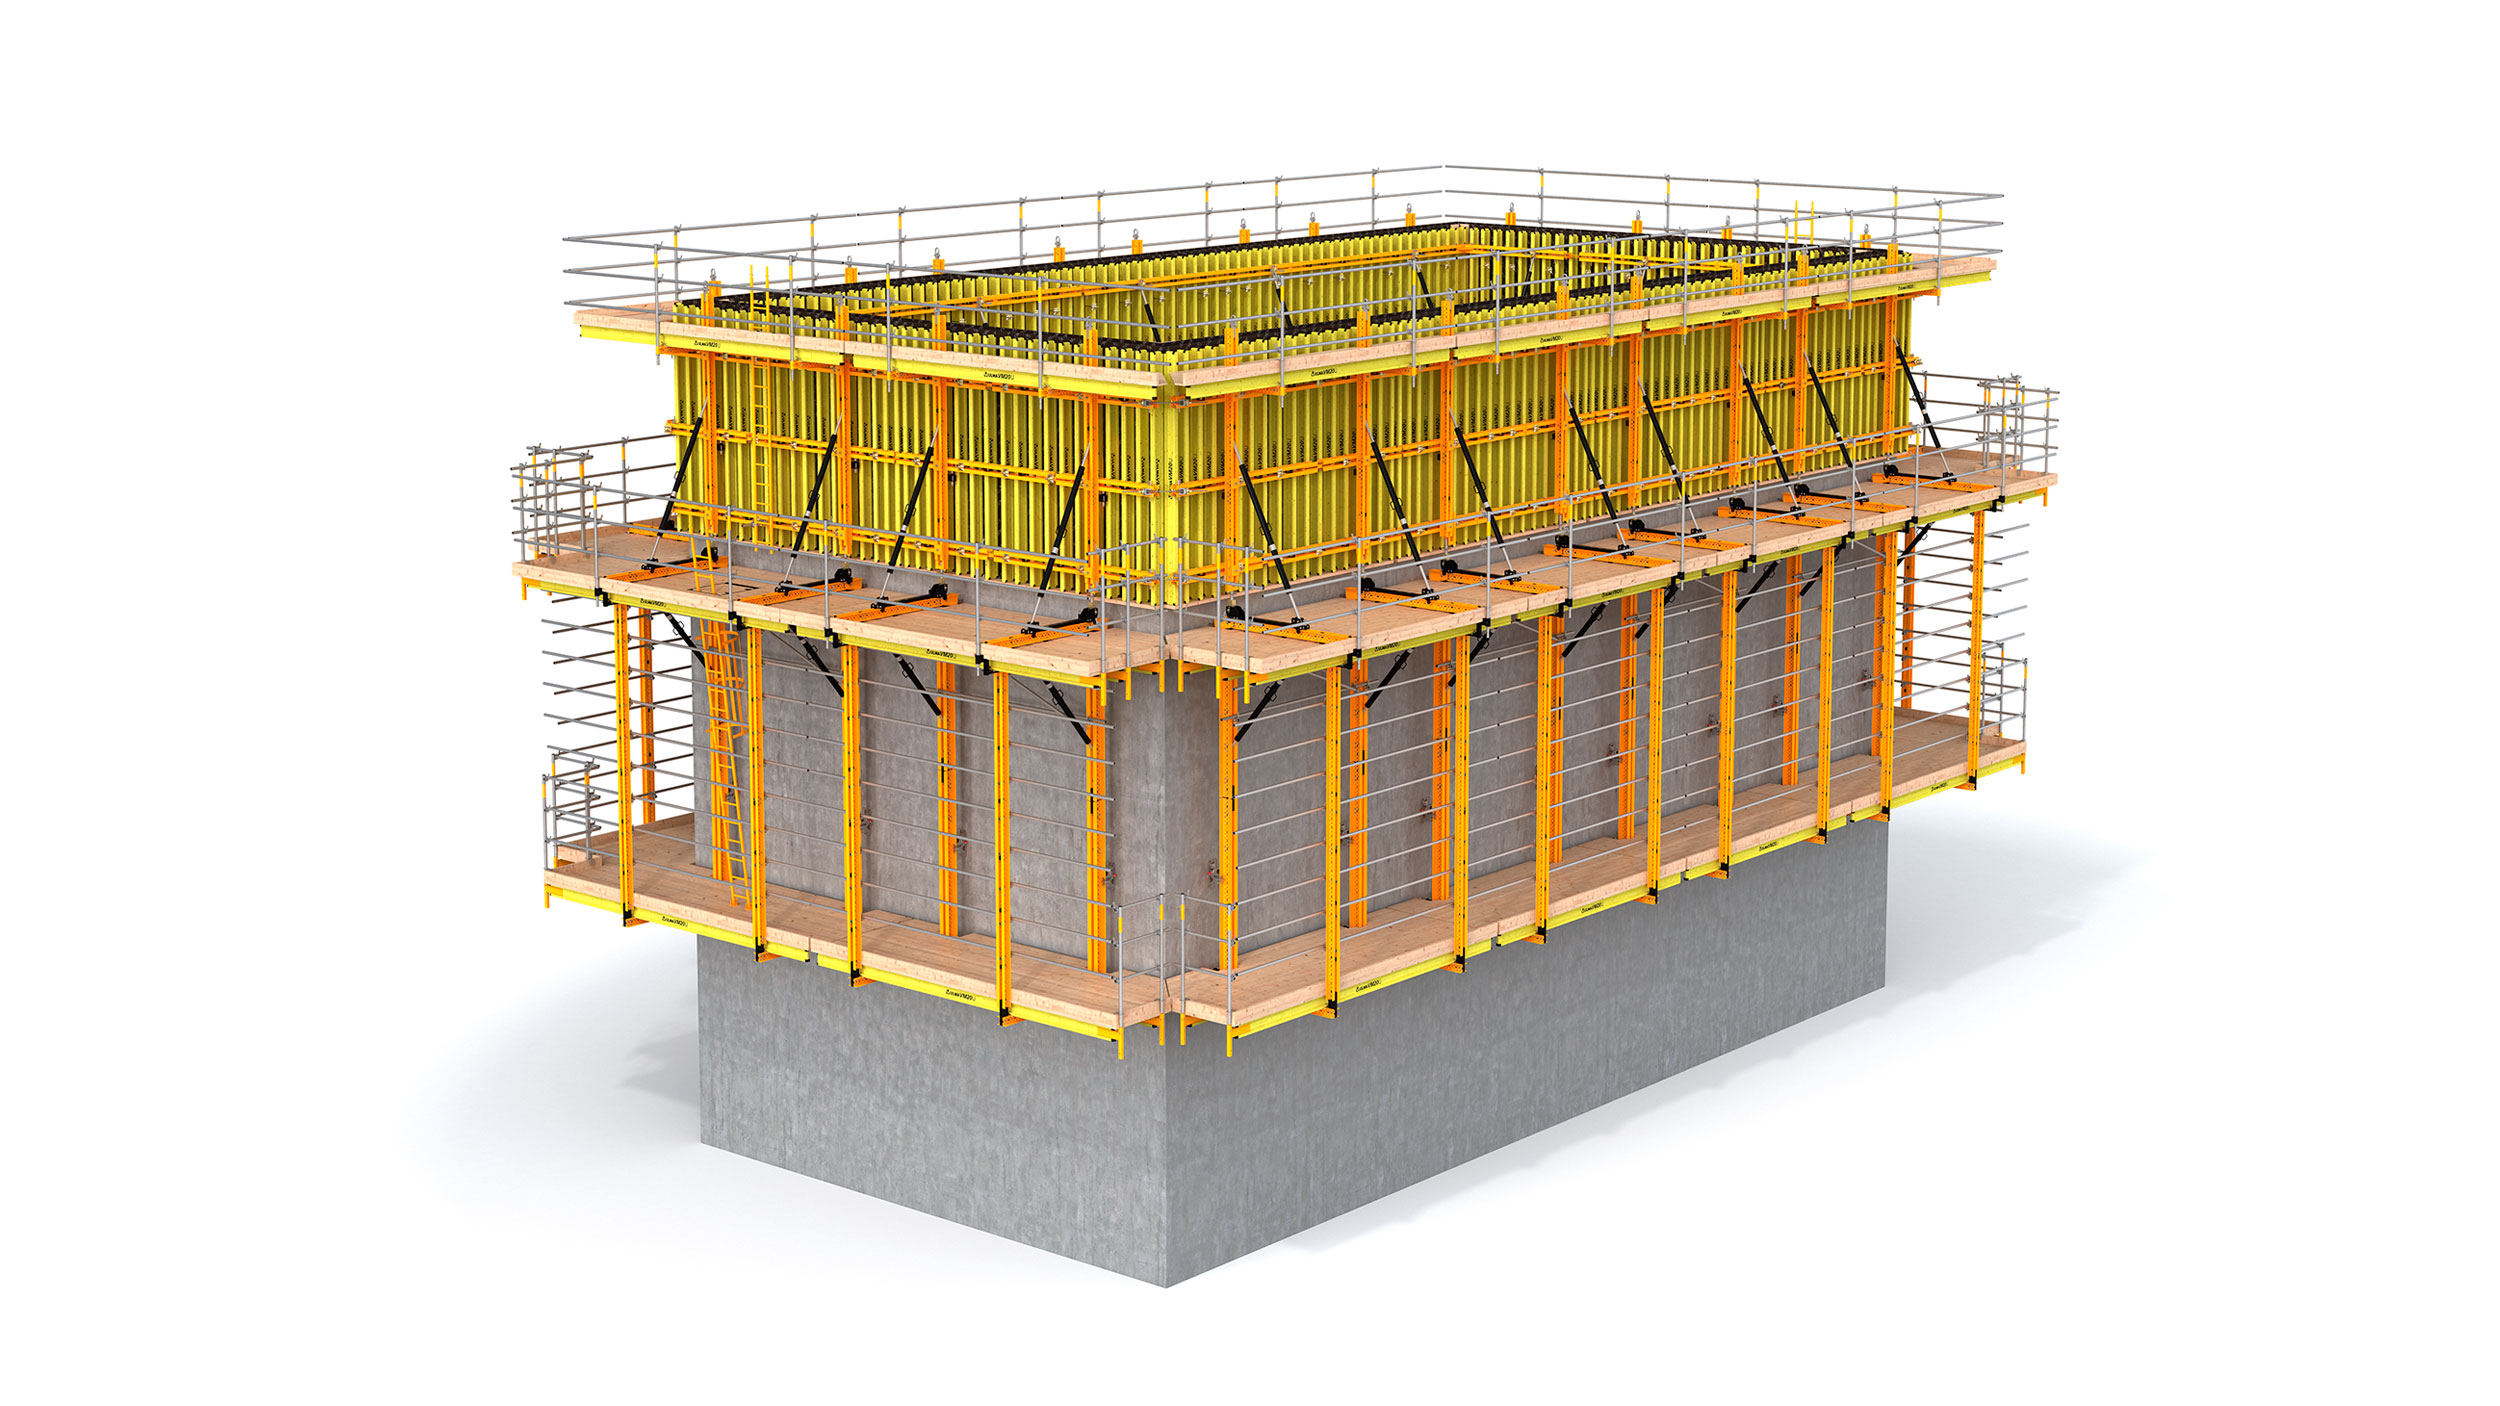 Univerzální montážní systém s vodící kolejnicí používanou při stavbě výškových budov. Optimálně navržená konstrukce s jednoduchým použitím.